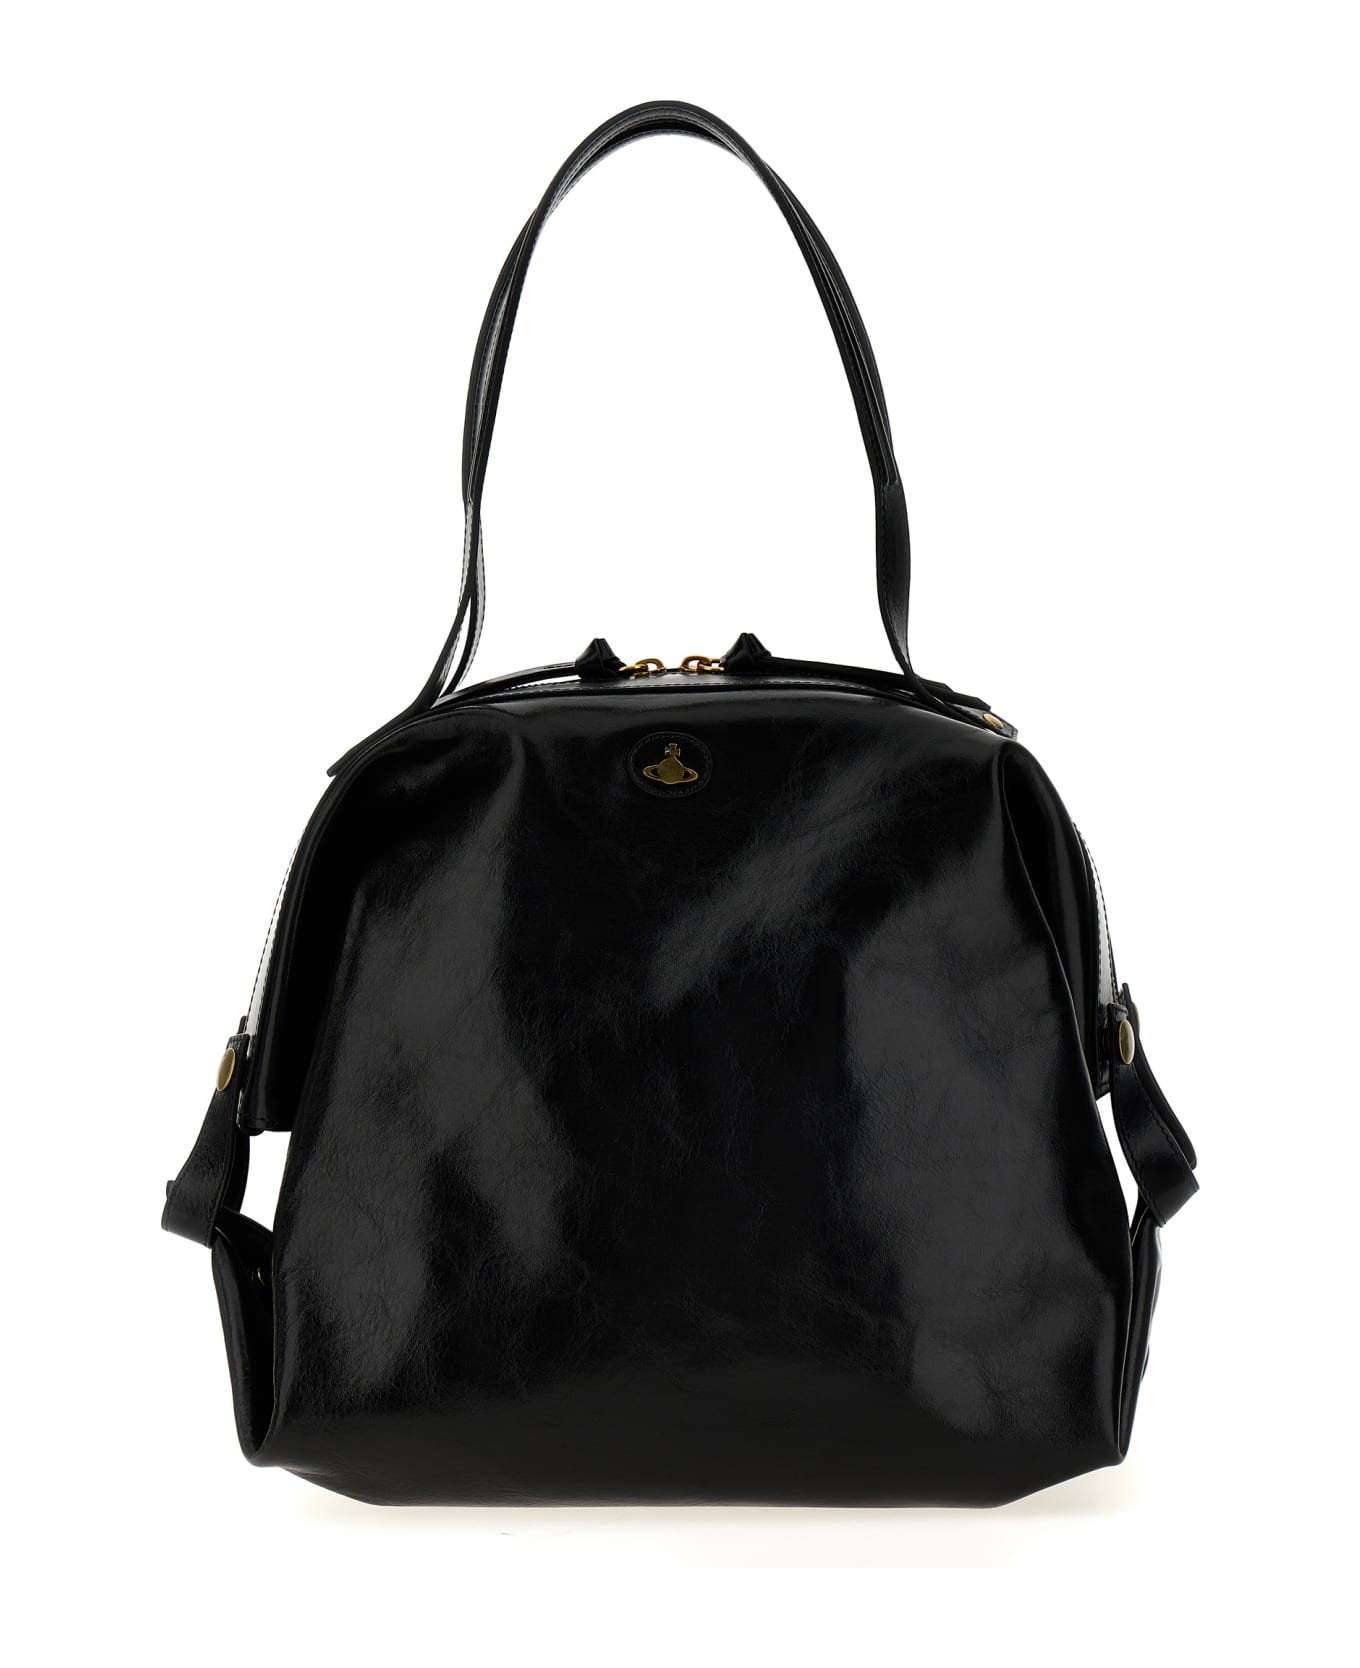 Vivienne Westwood 'mara Holdall' Handbag - Black  